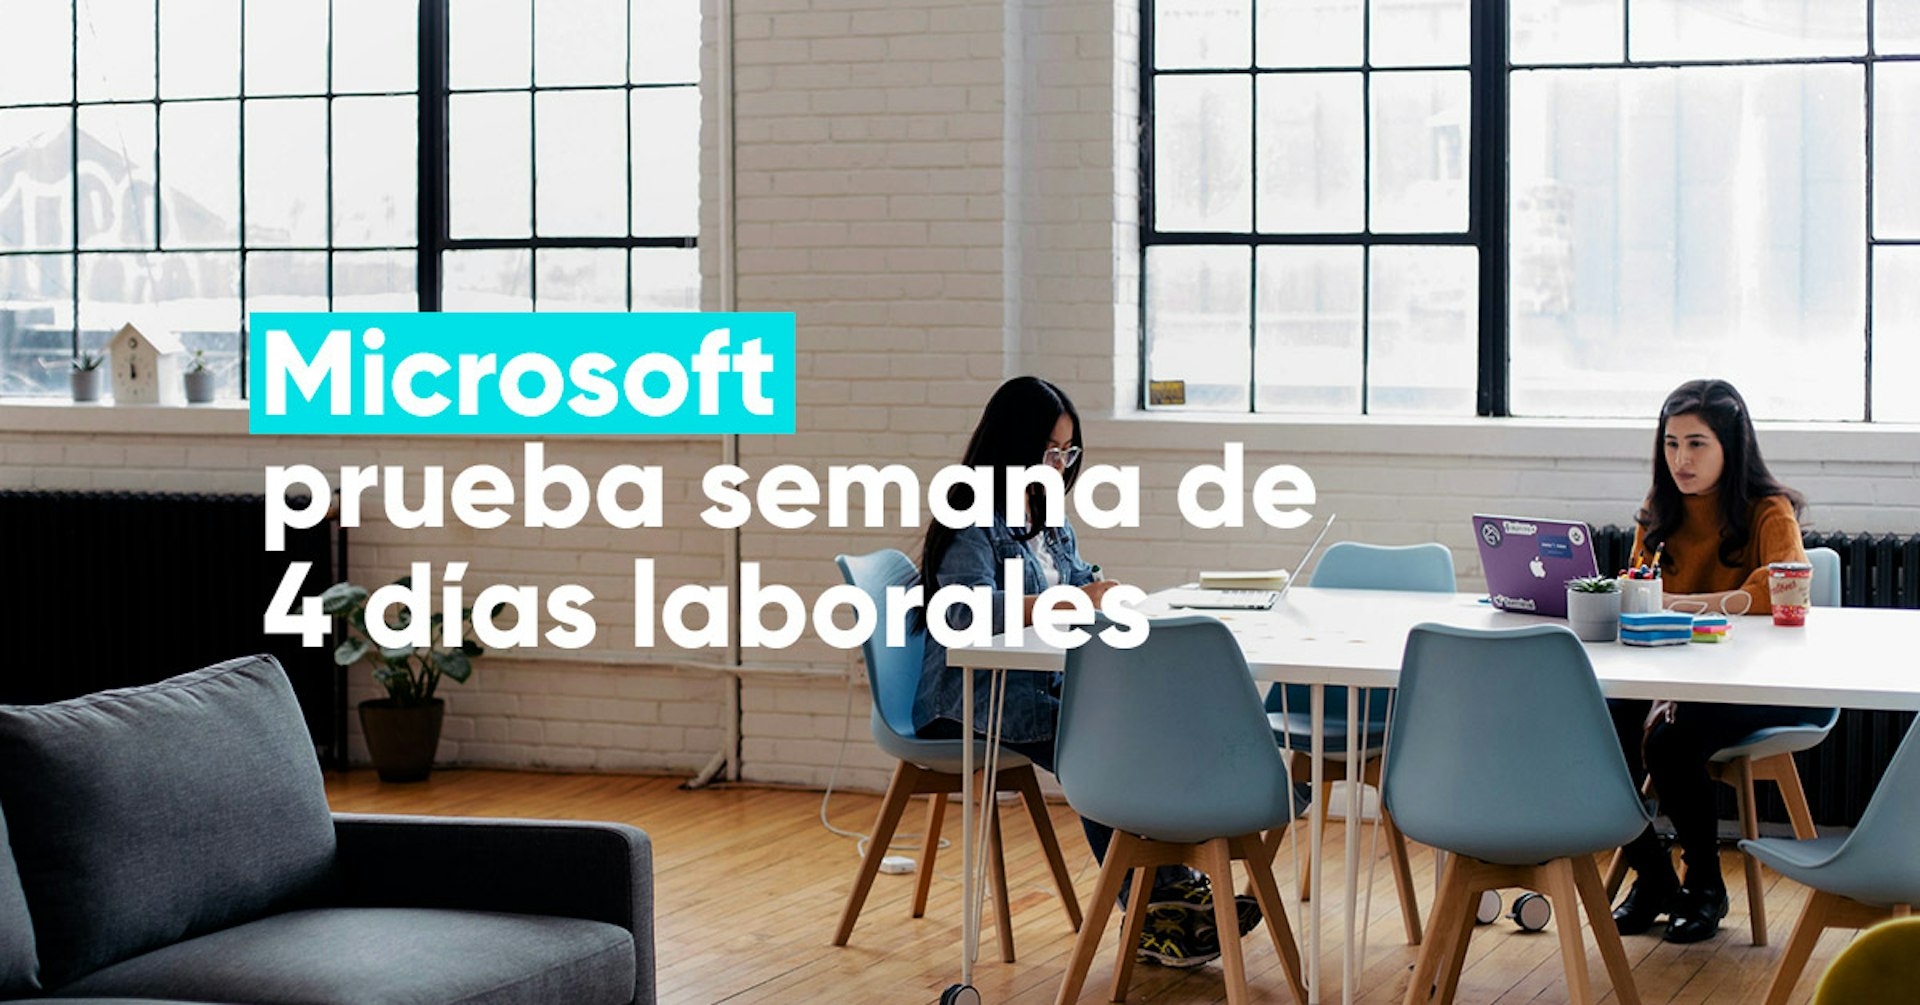 Microsoft experimenta semanas de 4 días laborales y aumenta su productividad en 40%